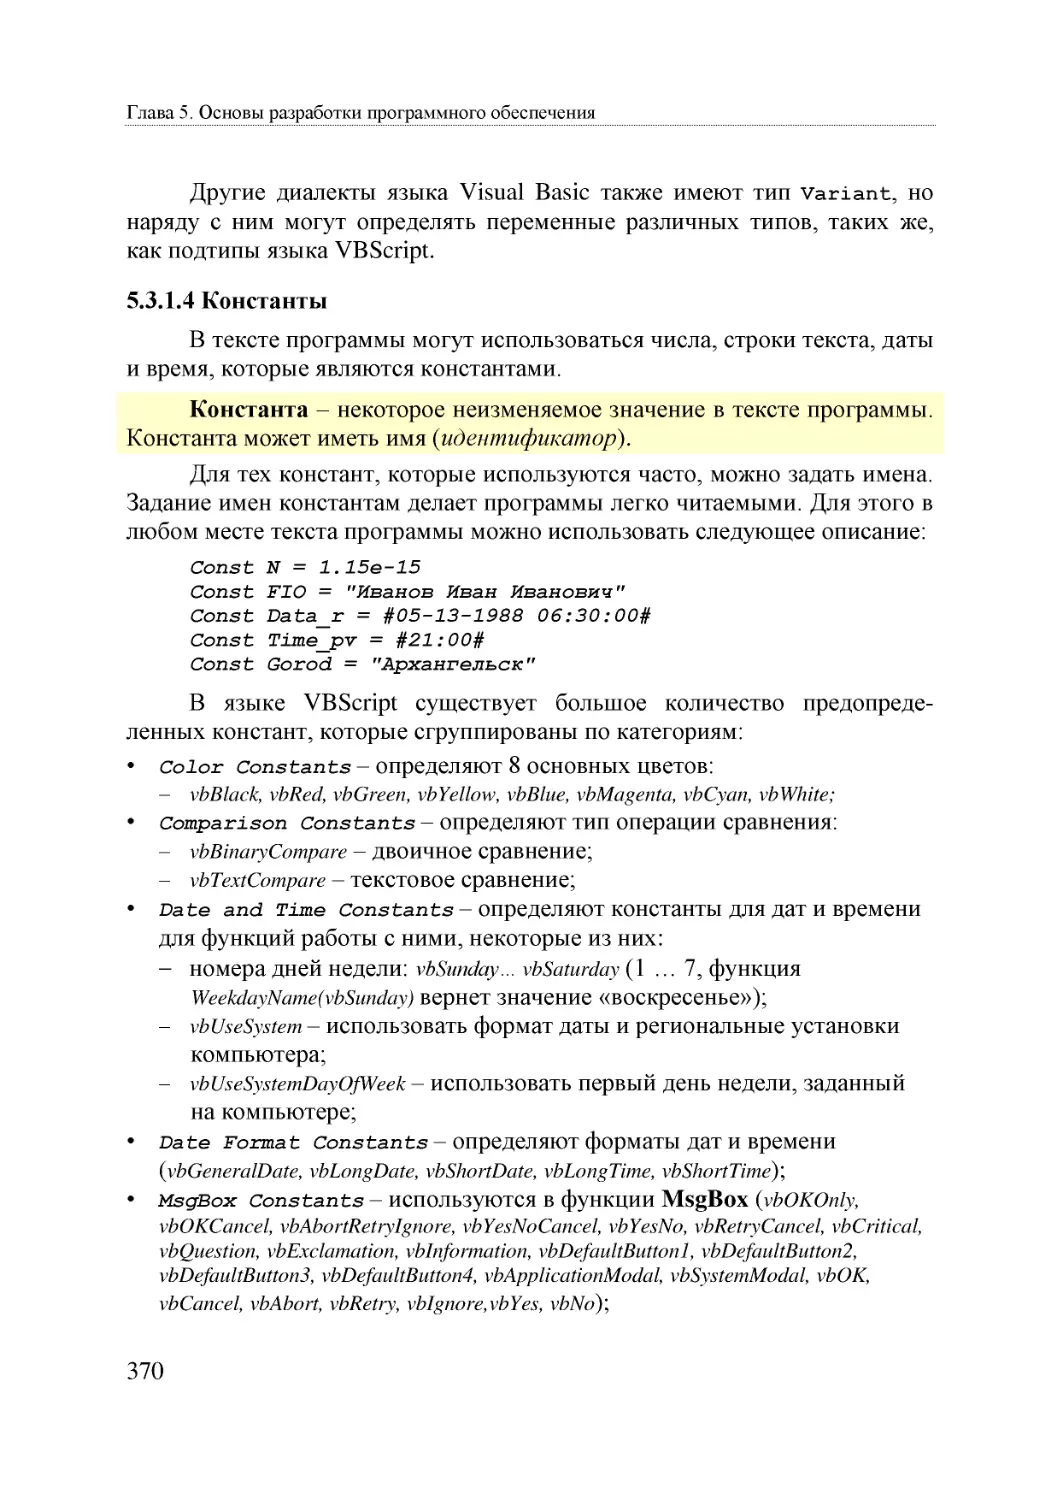 Informatika_Uchebnik_dlya_vuzov_2010 370